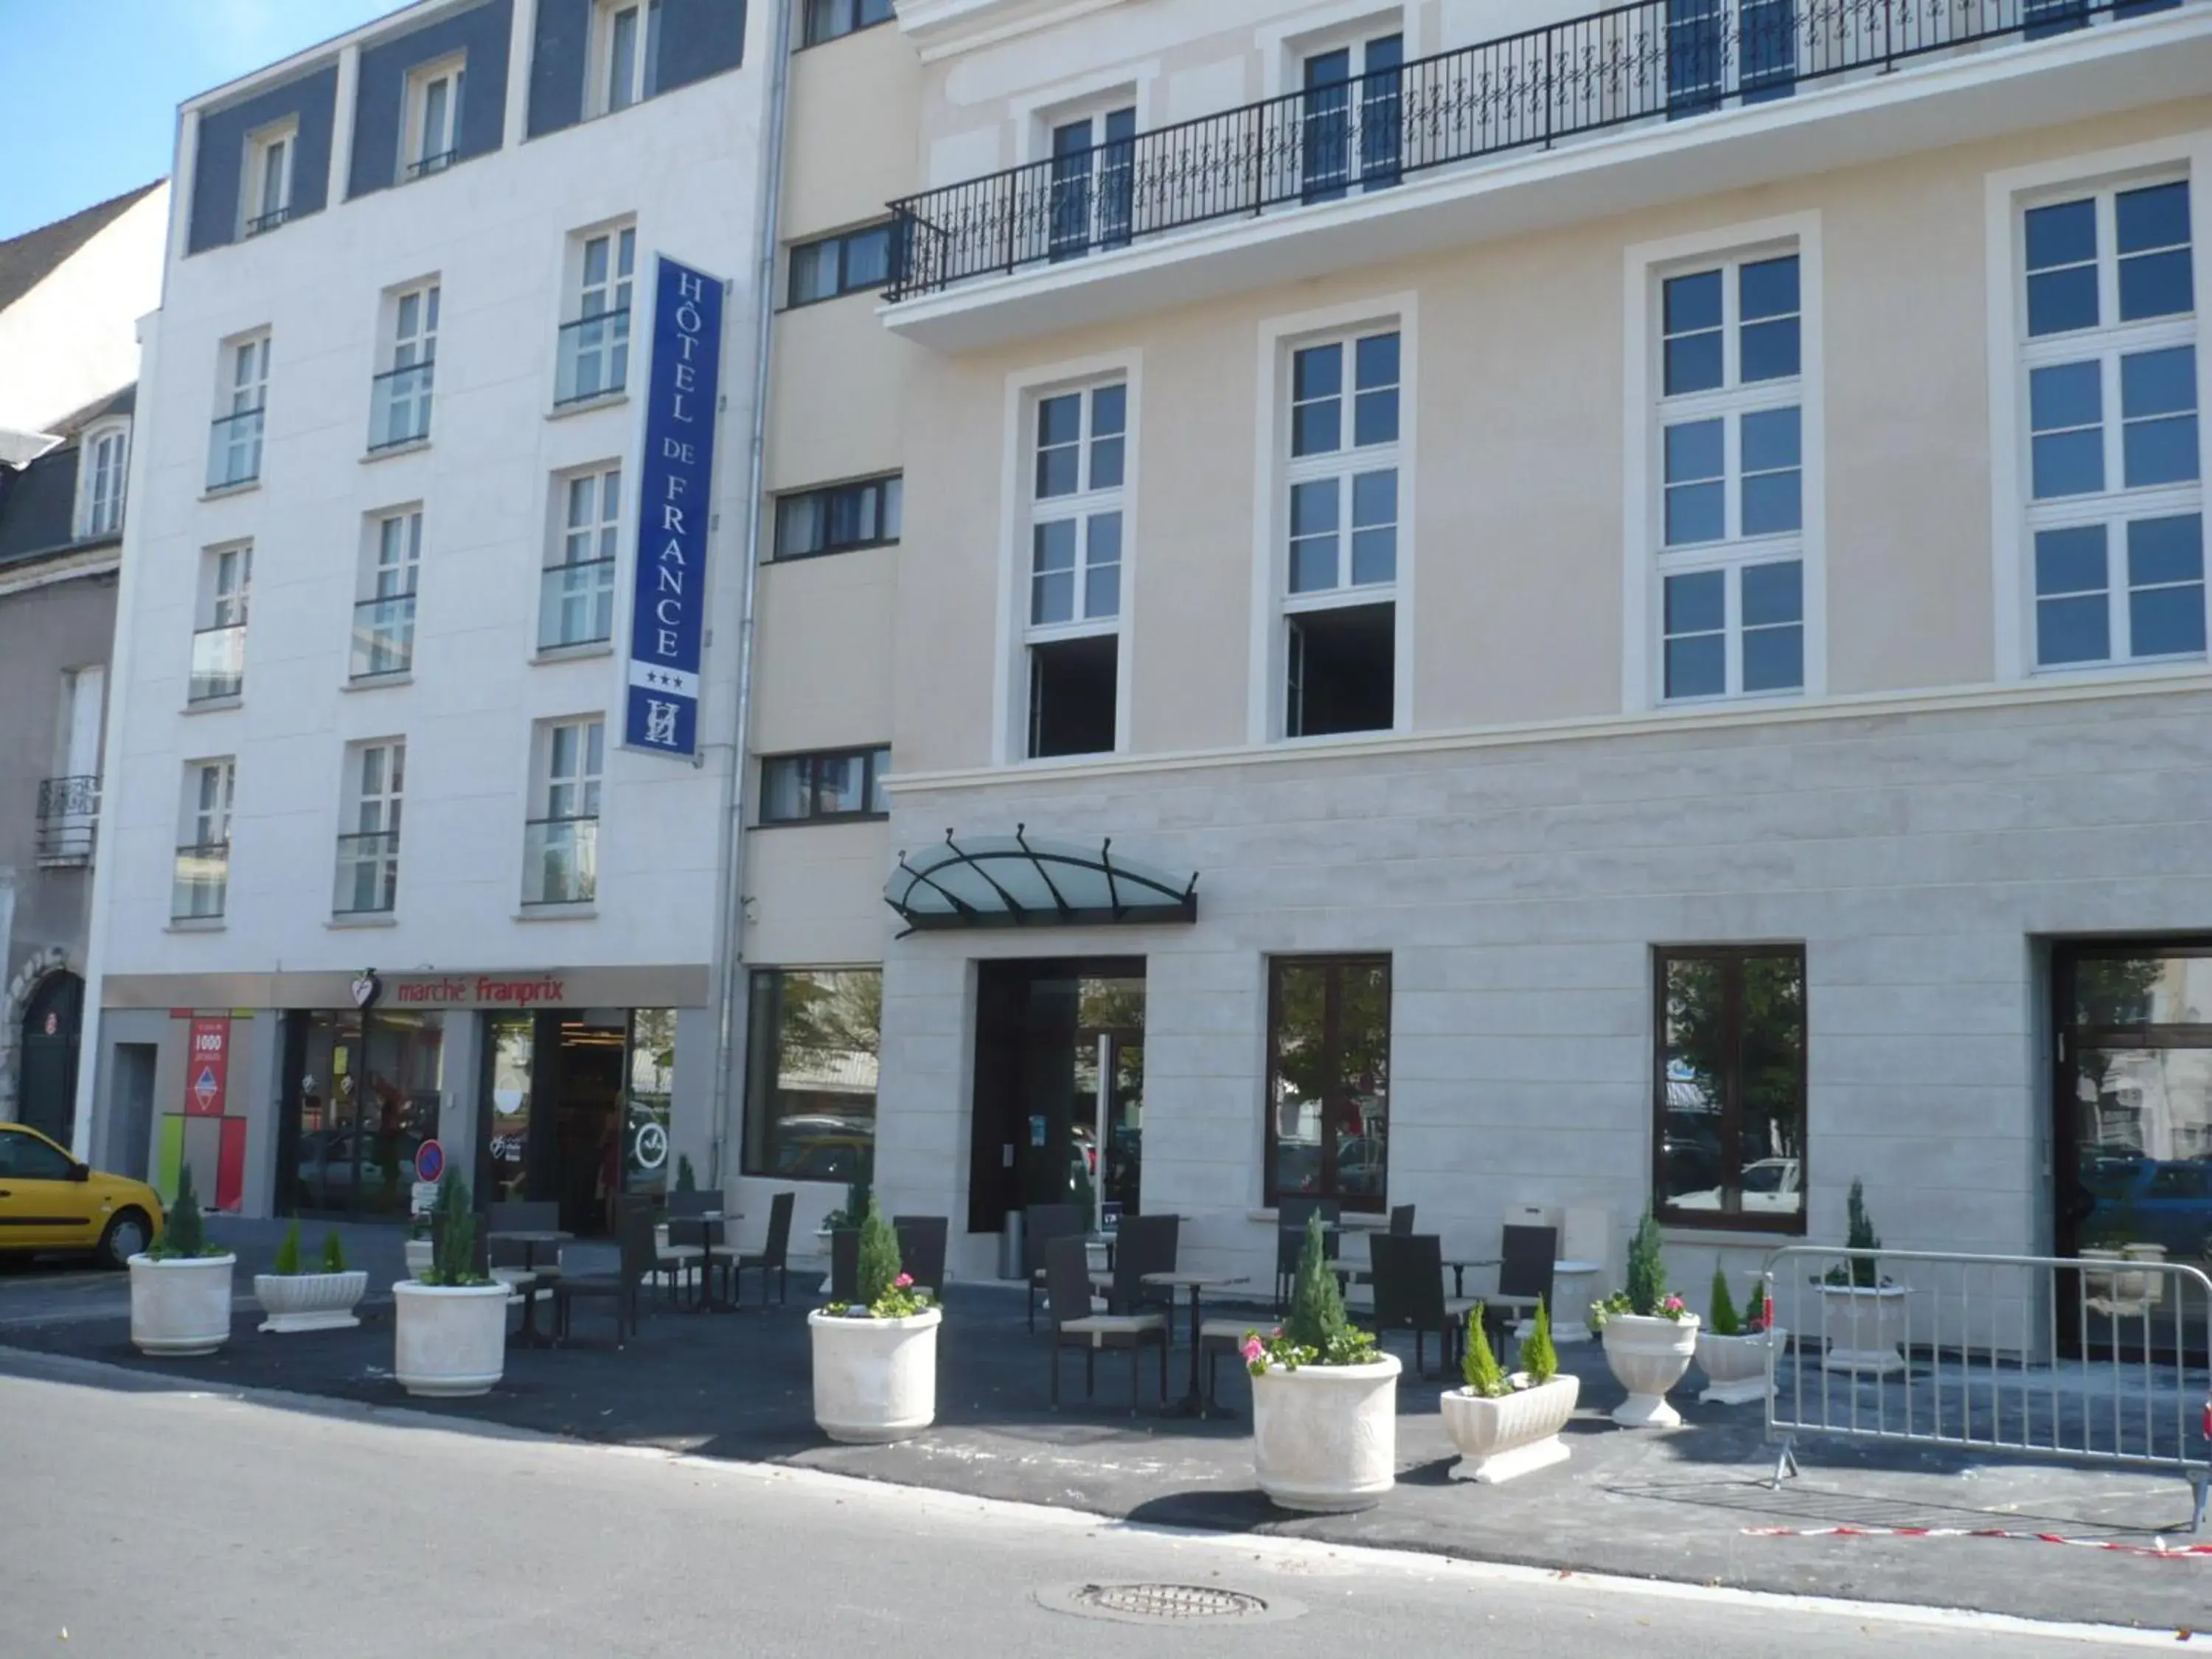 Facade/entrance, Property Building in Hotel De France